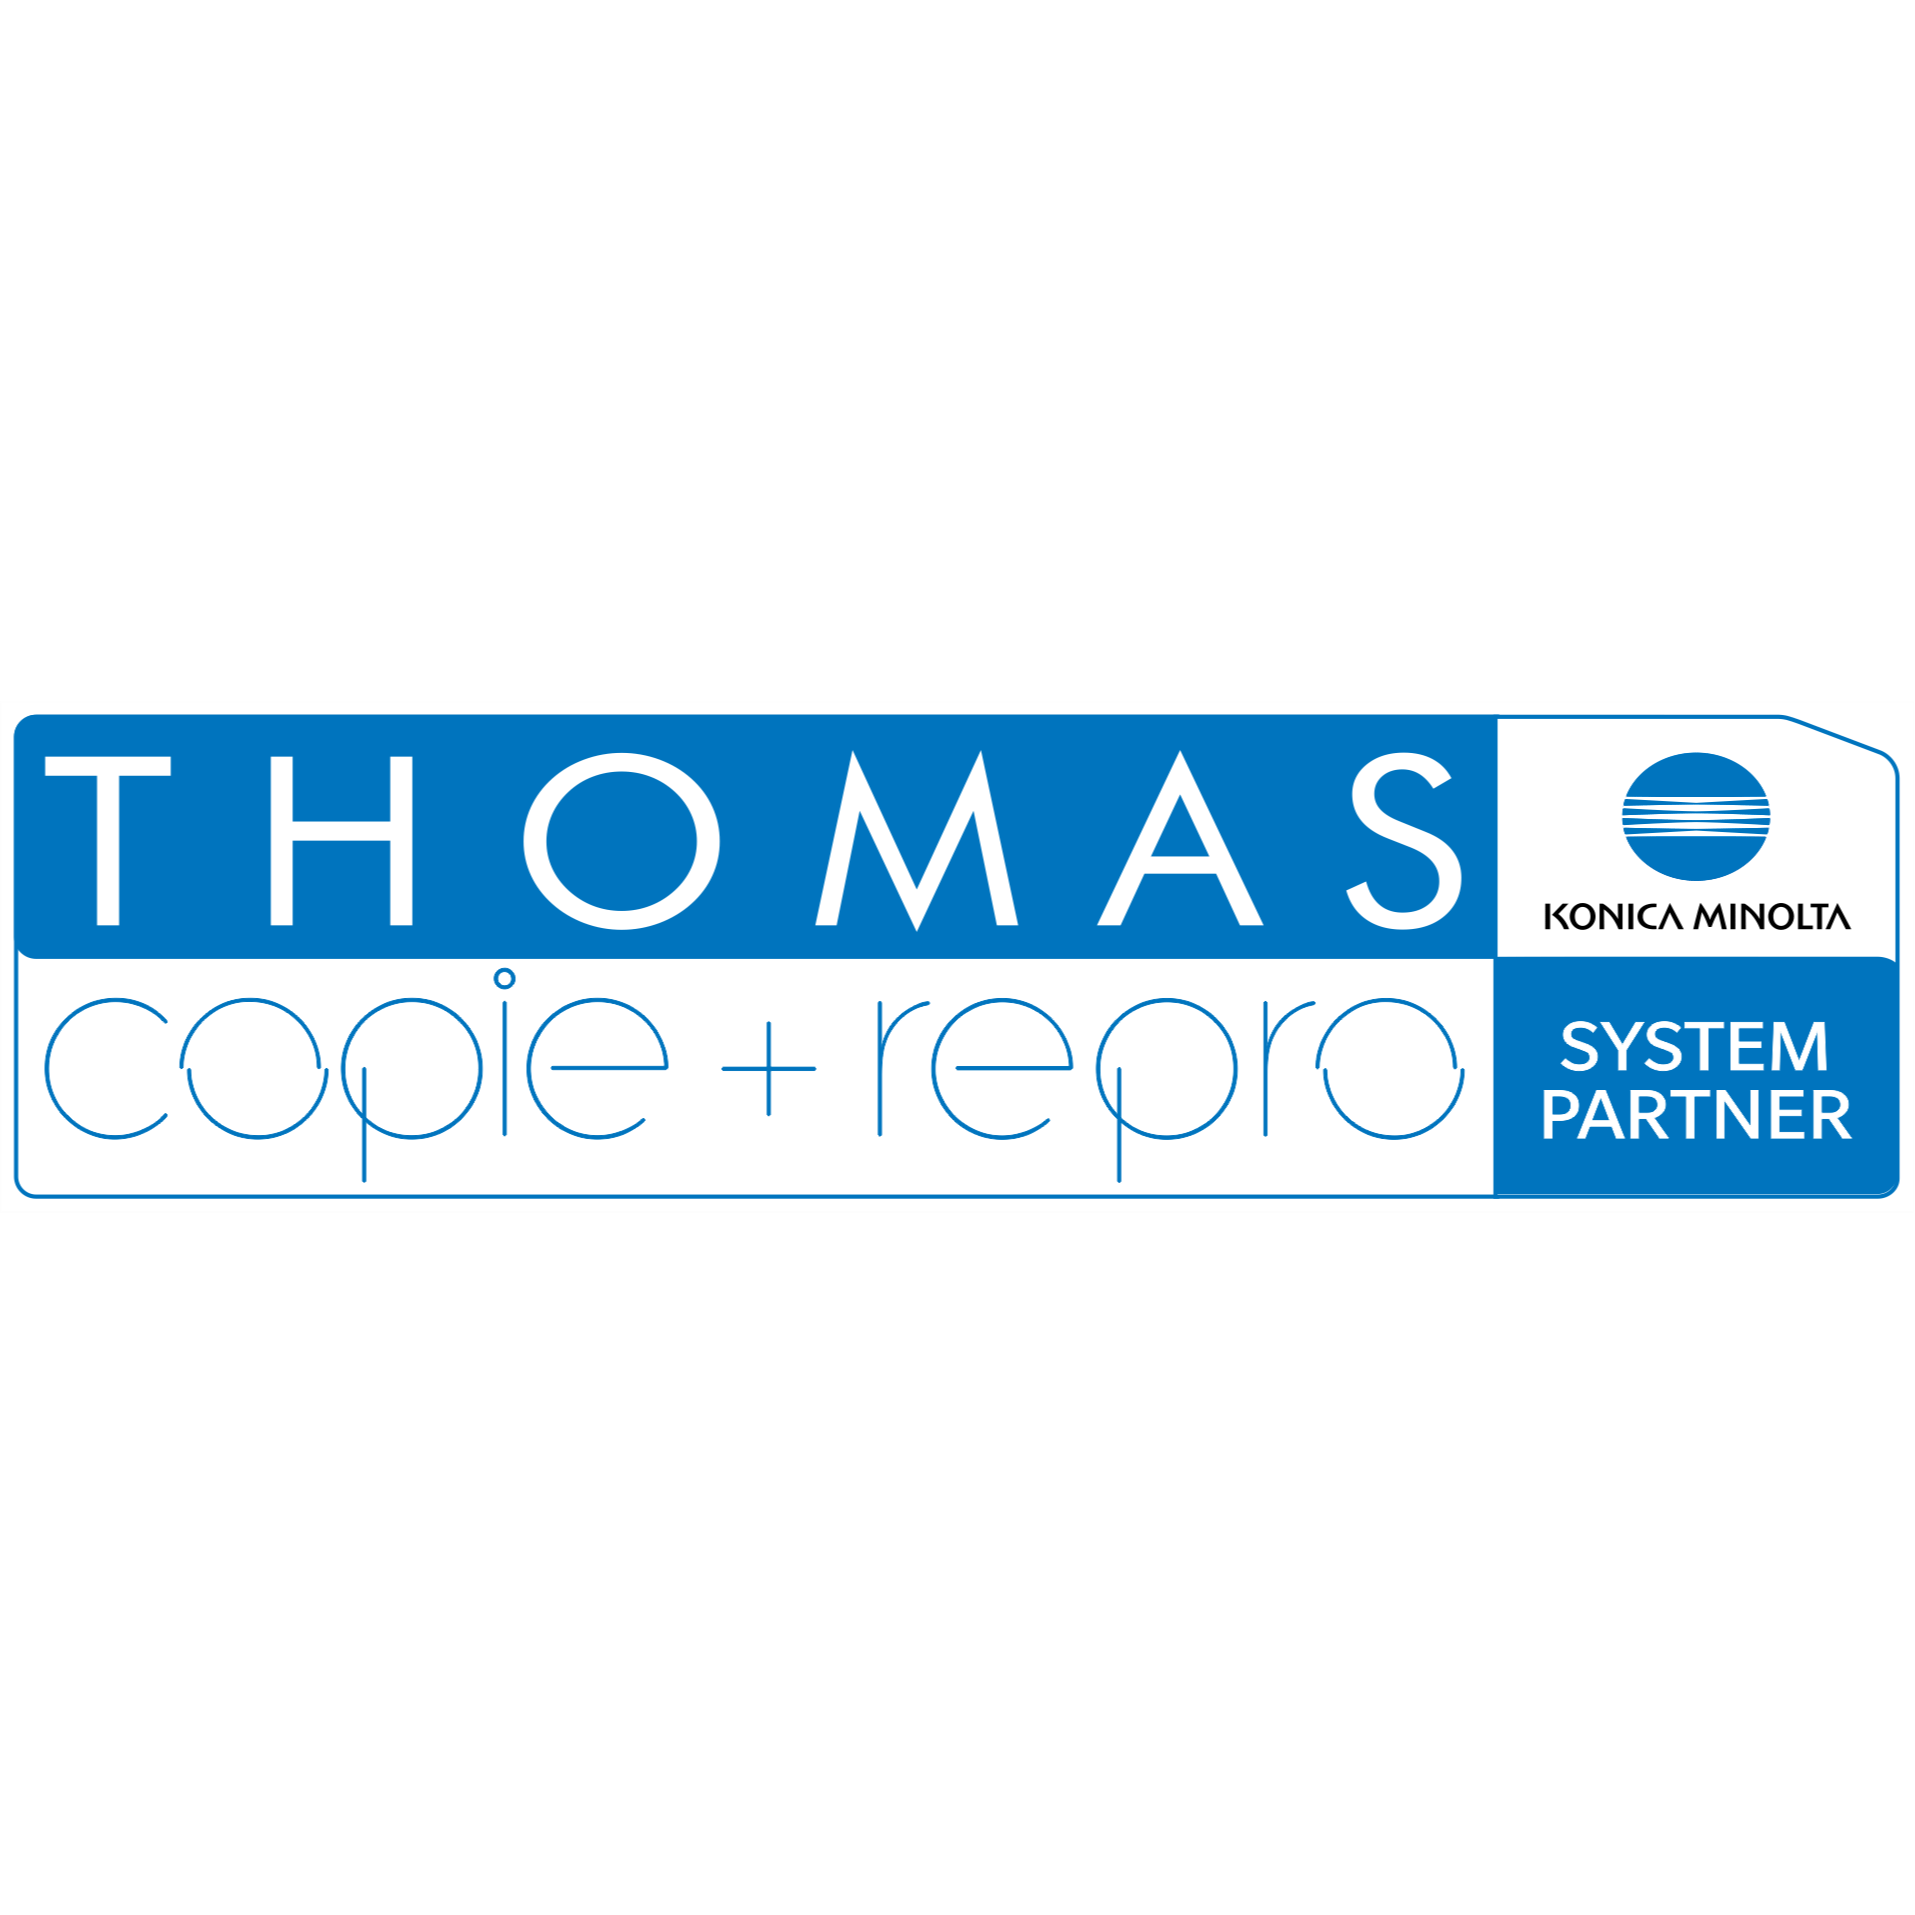 THOMAS copie + repro e.K. Copyshop Druck-, Scan- und Kopierdienstleistungen in Löbau - Logo